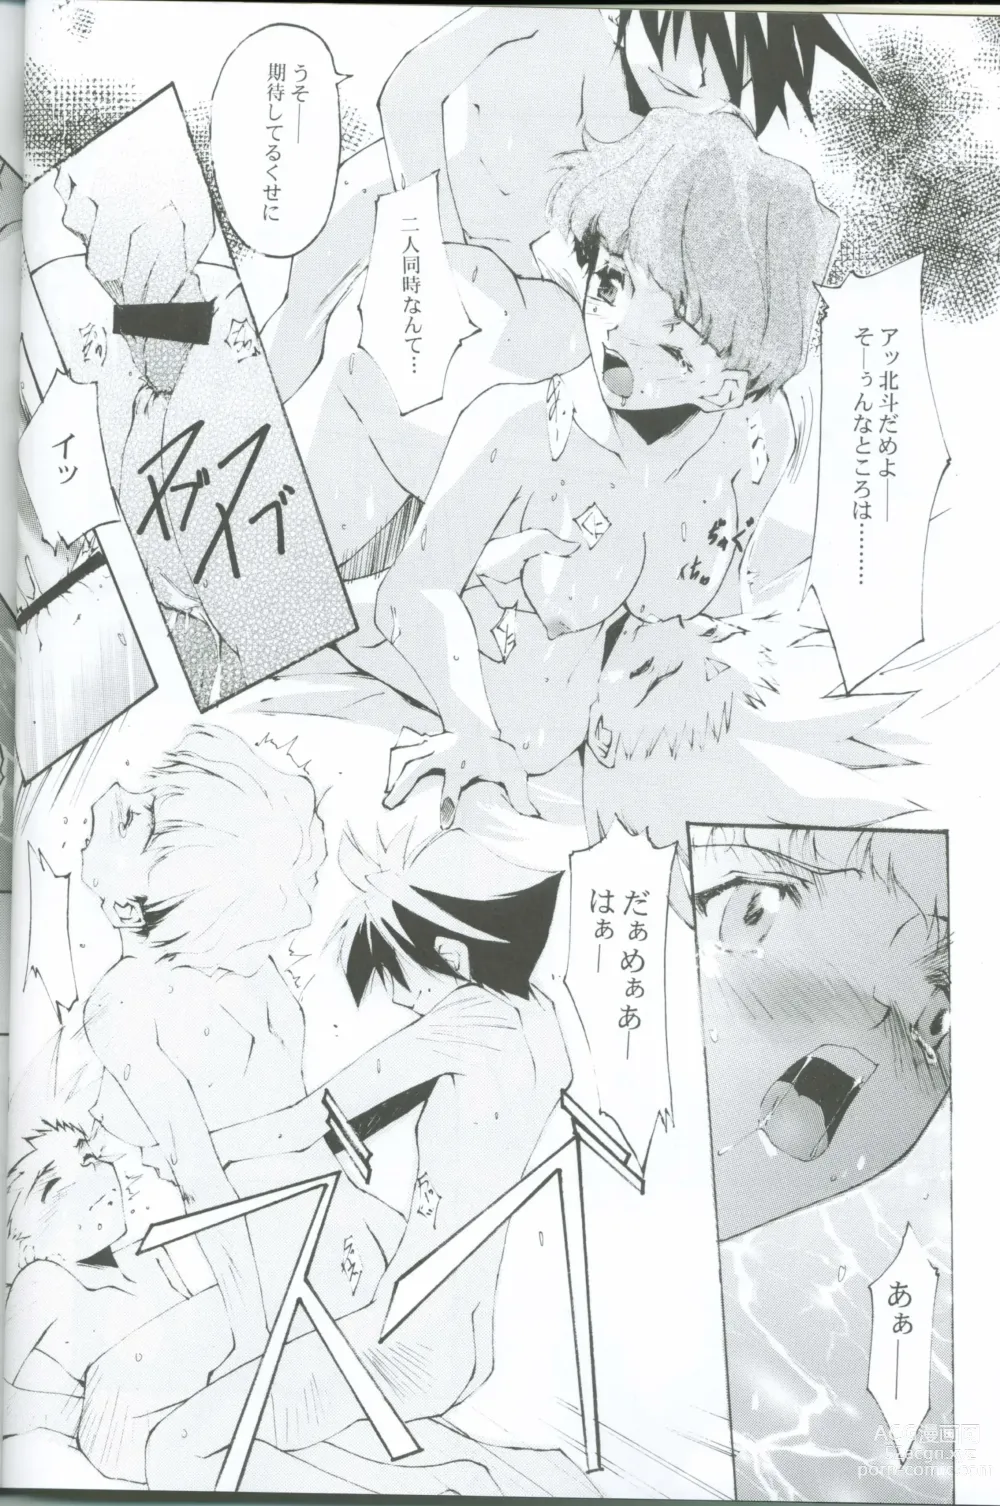 Page 9 of doujinshi KoToNoN